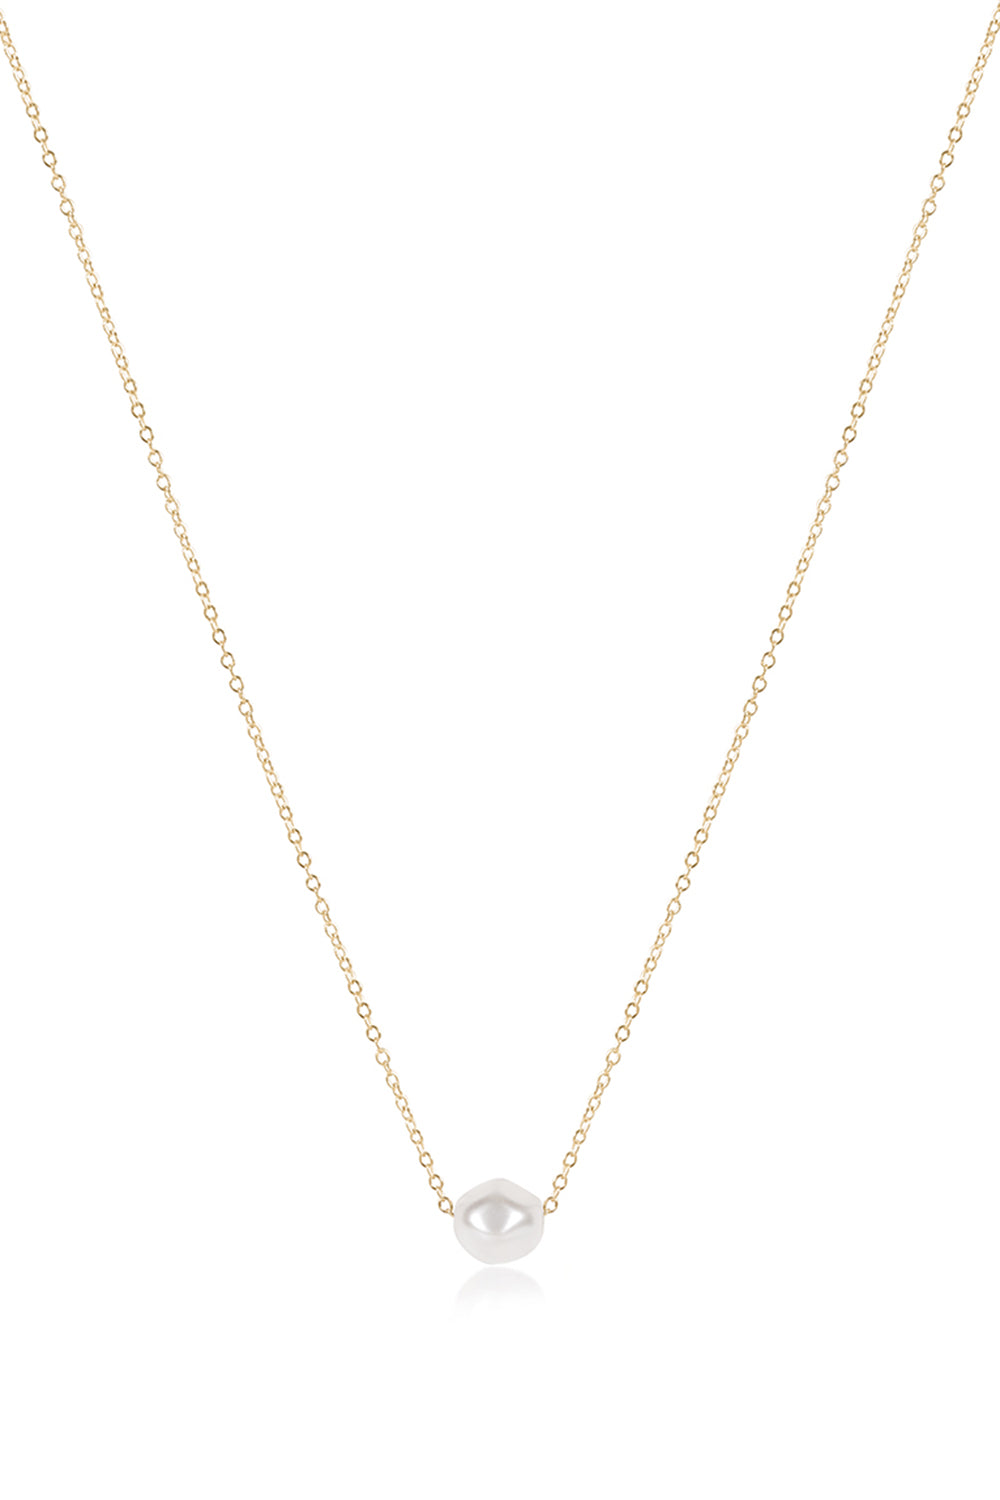 EN Admire Necklace - Pearl